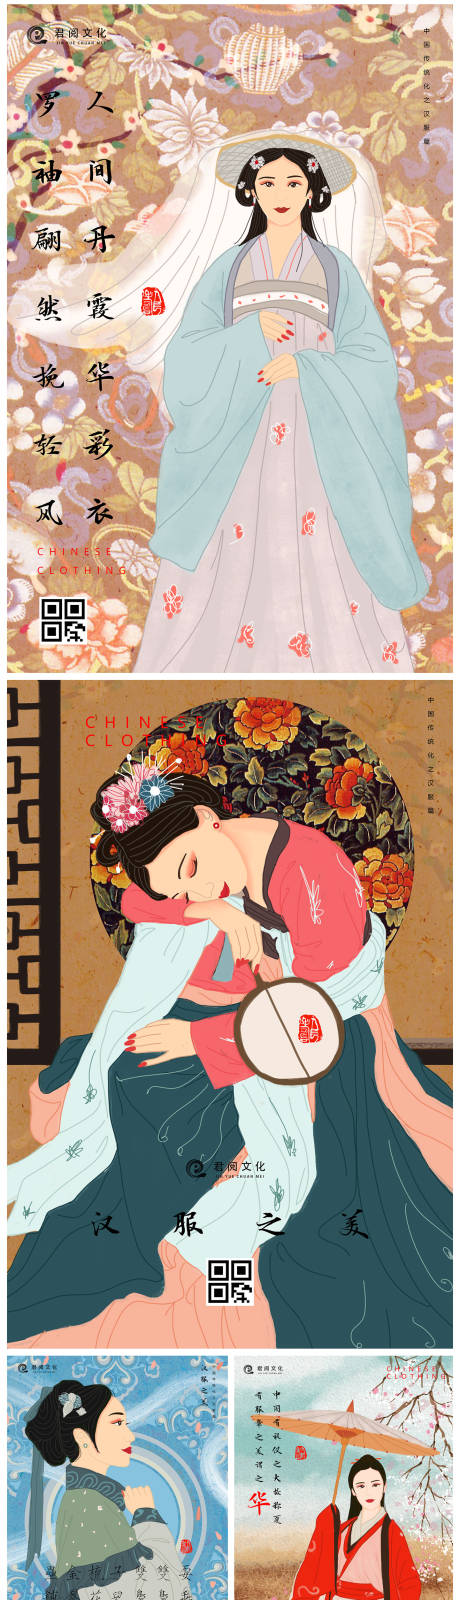 中国古装汉服国潮插画海报